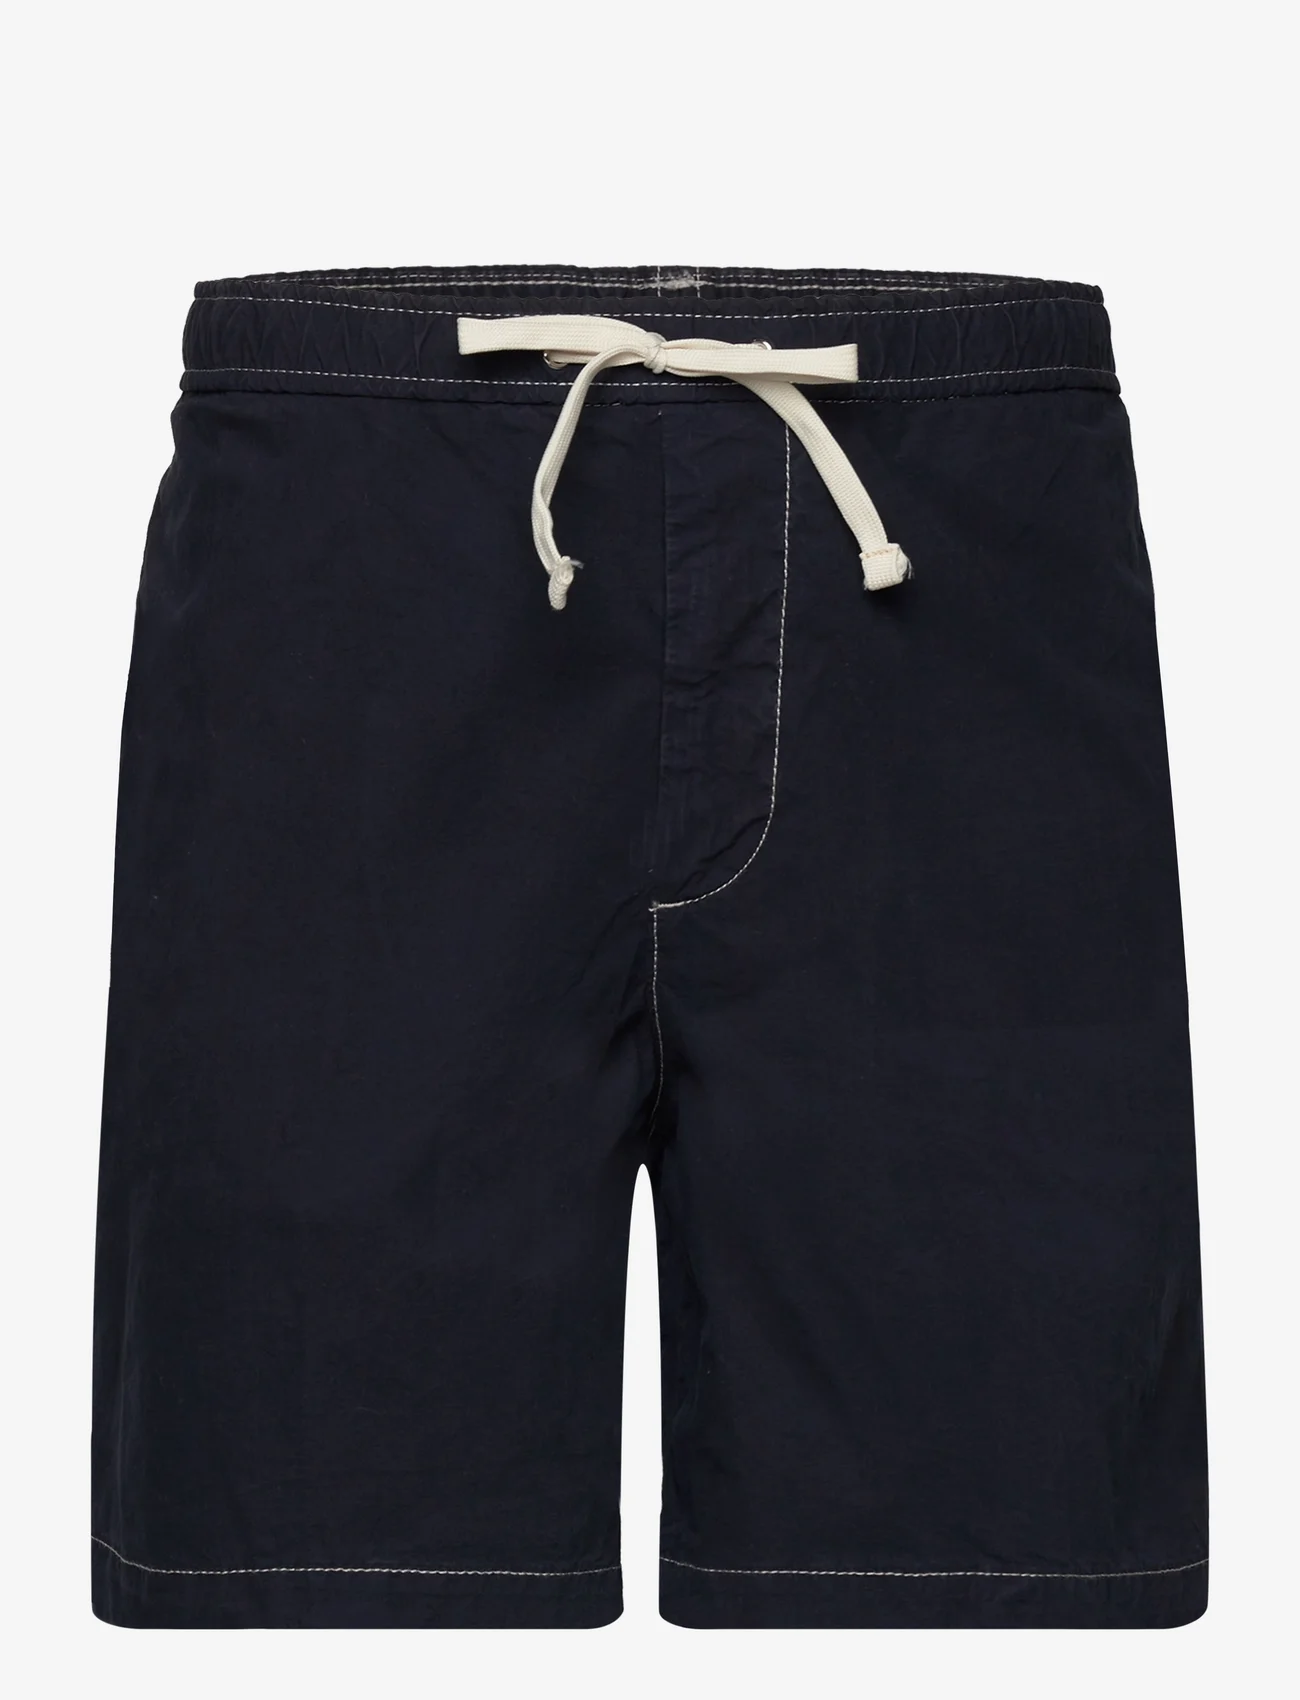 BOSS - Karlos-DS-Shorts - „chino“ stiliaus šortai - dark blue - 0